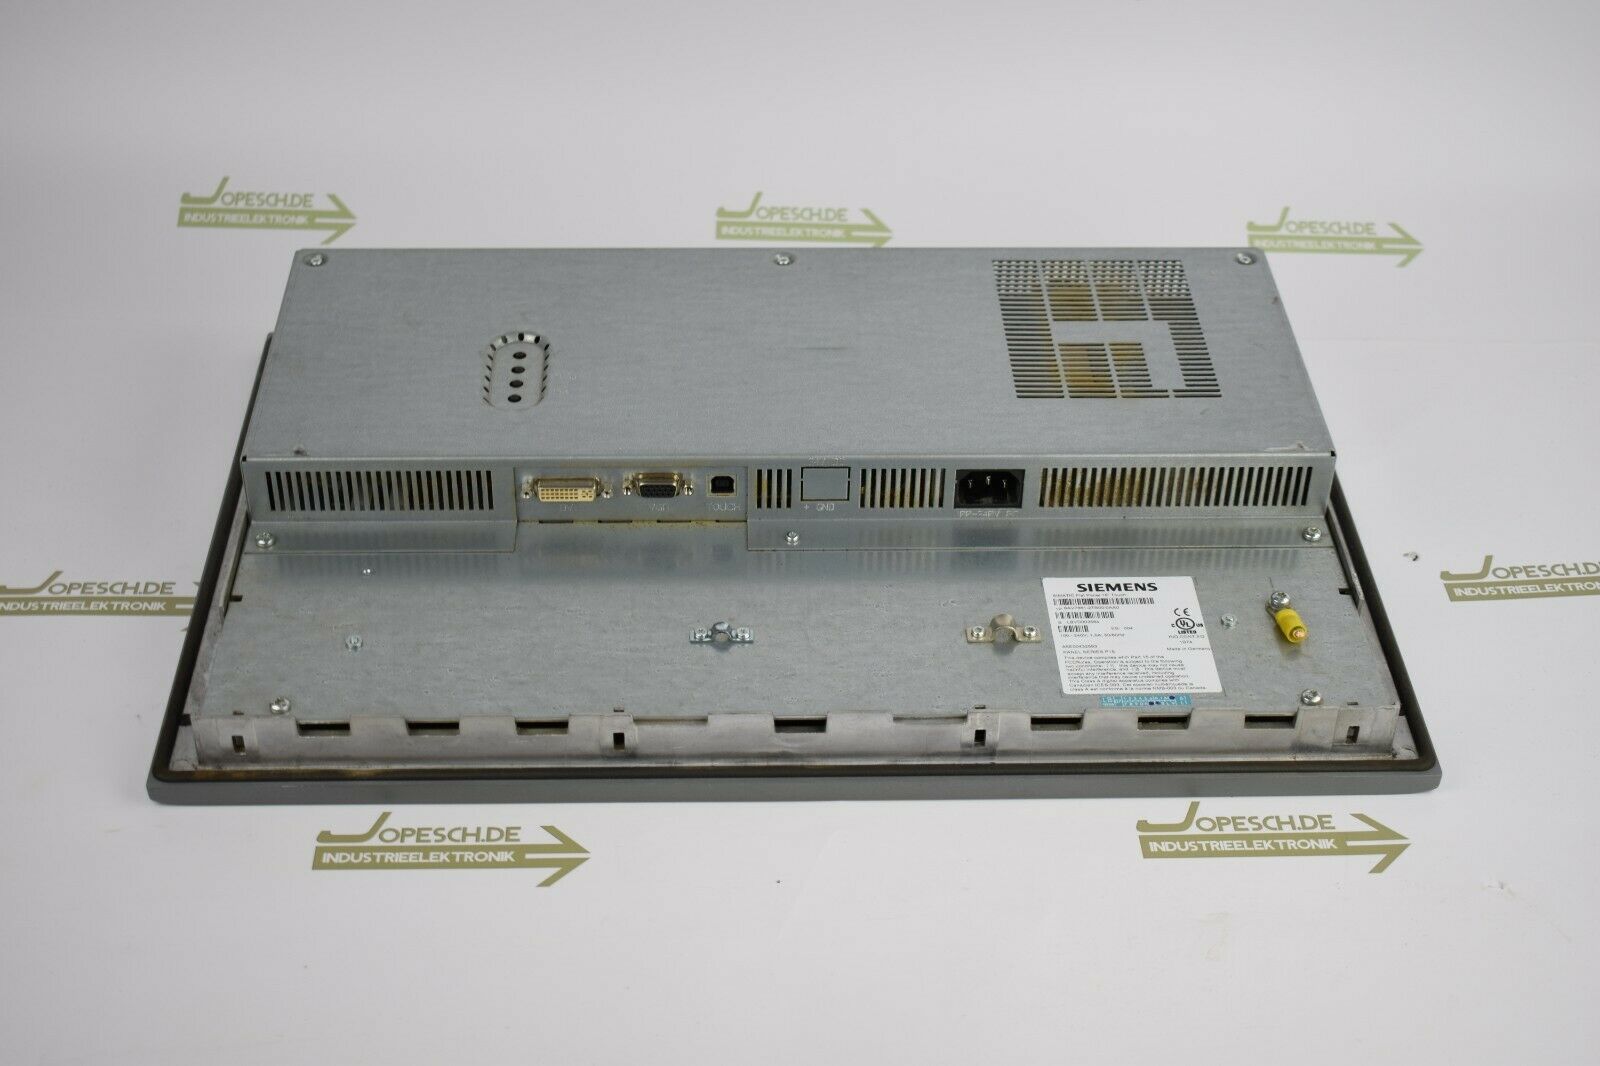 Siemens simatic Flat Panel 15'' Touch 6AV7861-2TB00-0AA0 ( 6AV7 861-2TB00-0AA0 )